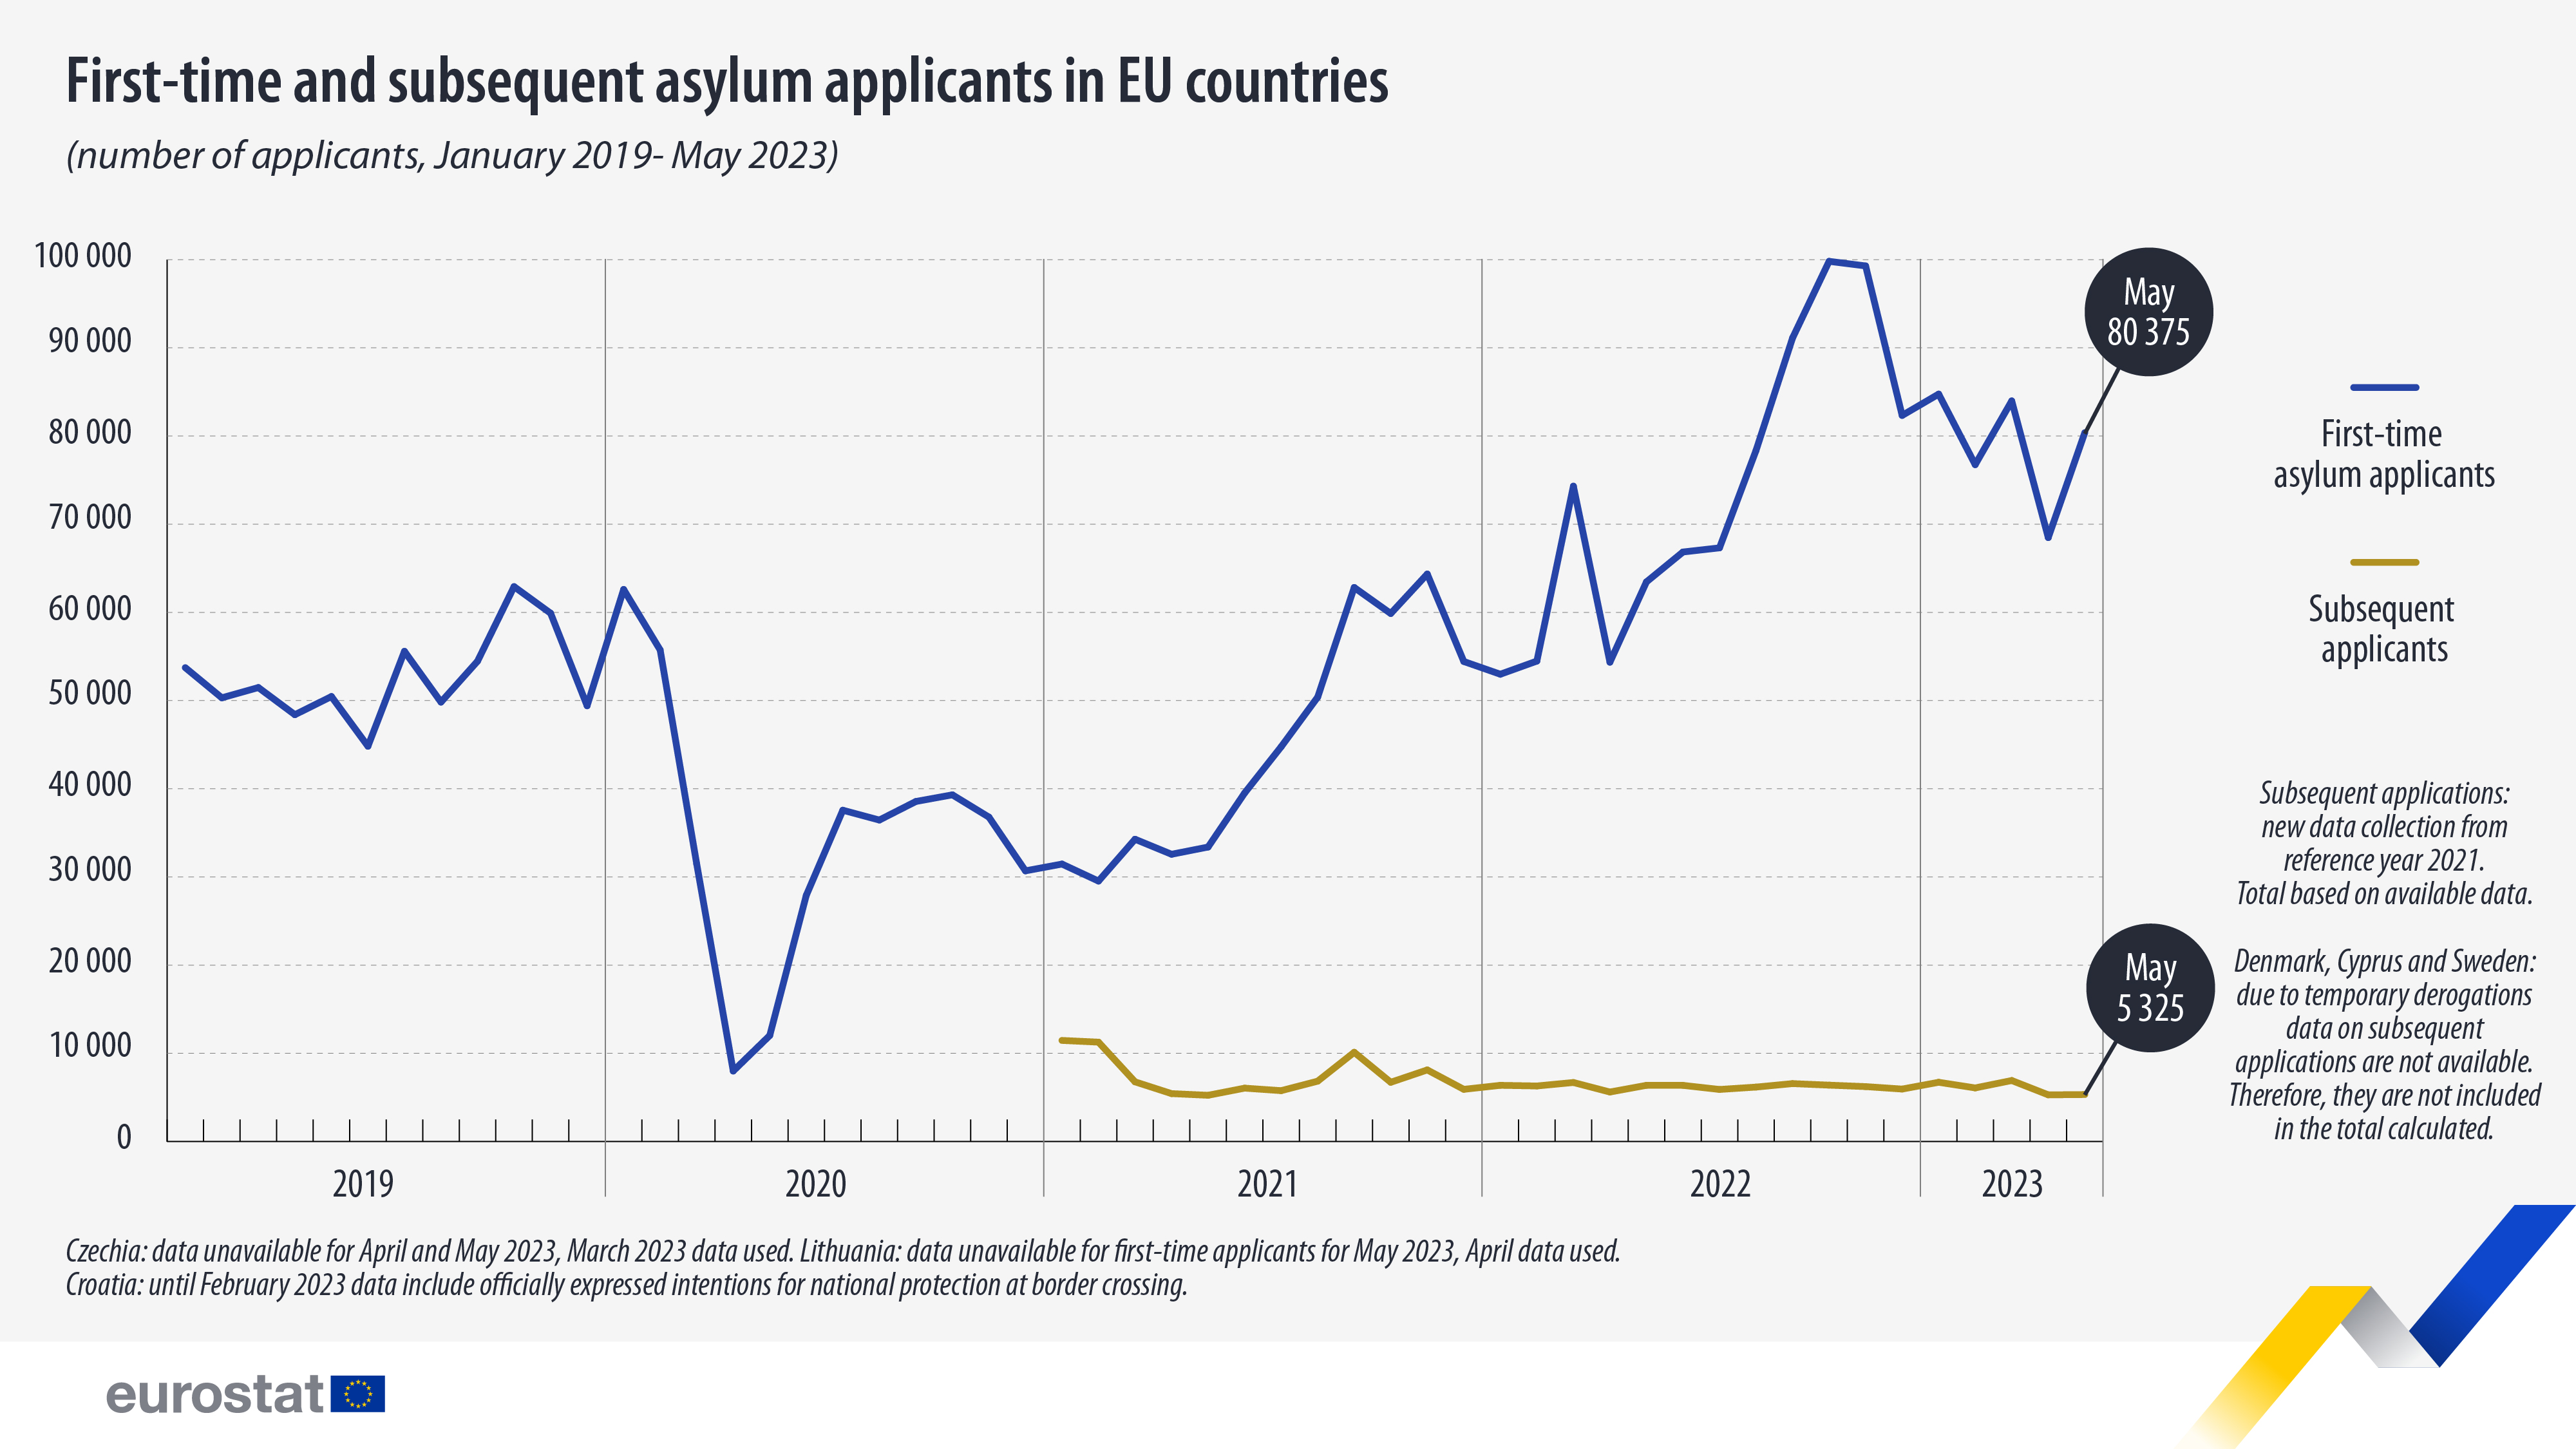 γραμμή τάσης: Πρώτη φορά και μεταγενέστεροι αιτούντες άσυλο σε χώρες της ΕΕ (αριθμός αιτούντων, Ιανουάριος 2019- Μάιος 2023)